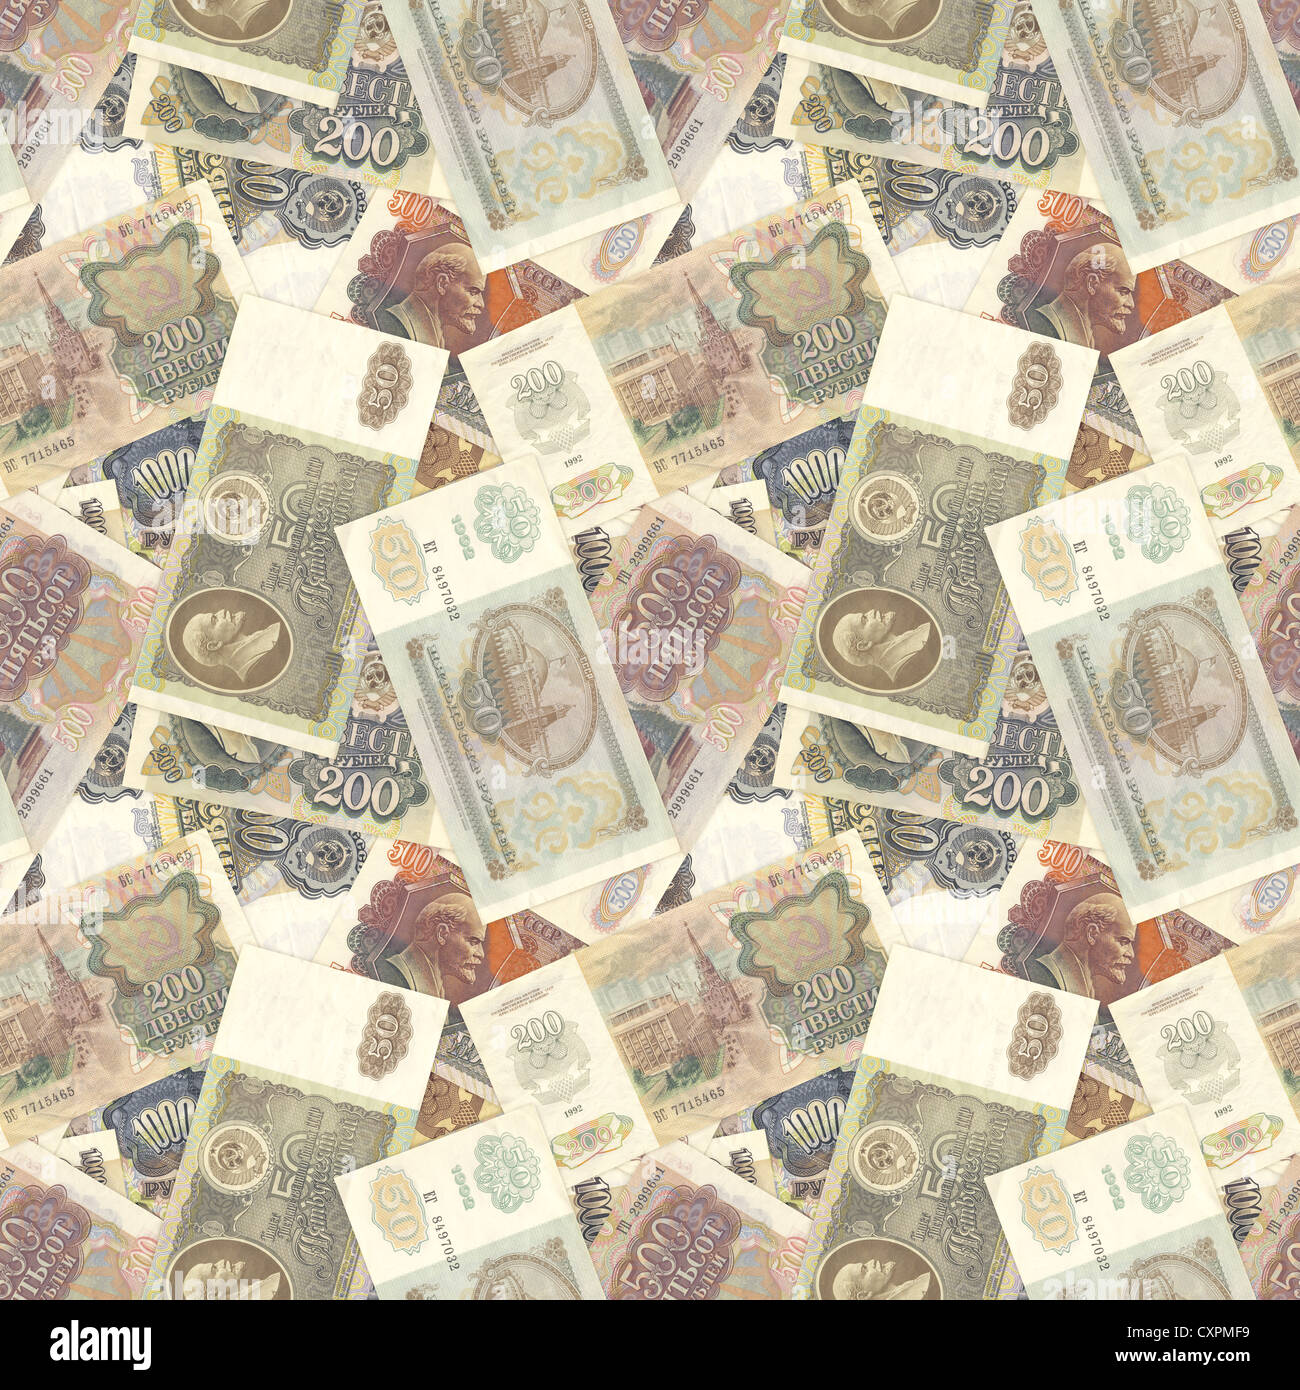 Obsolete soviet money - seamless texture Stock Photo